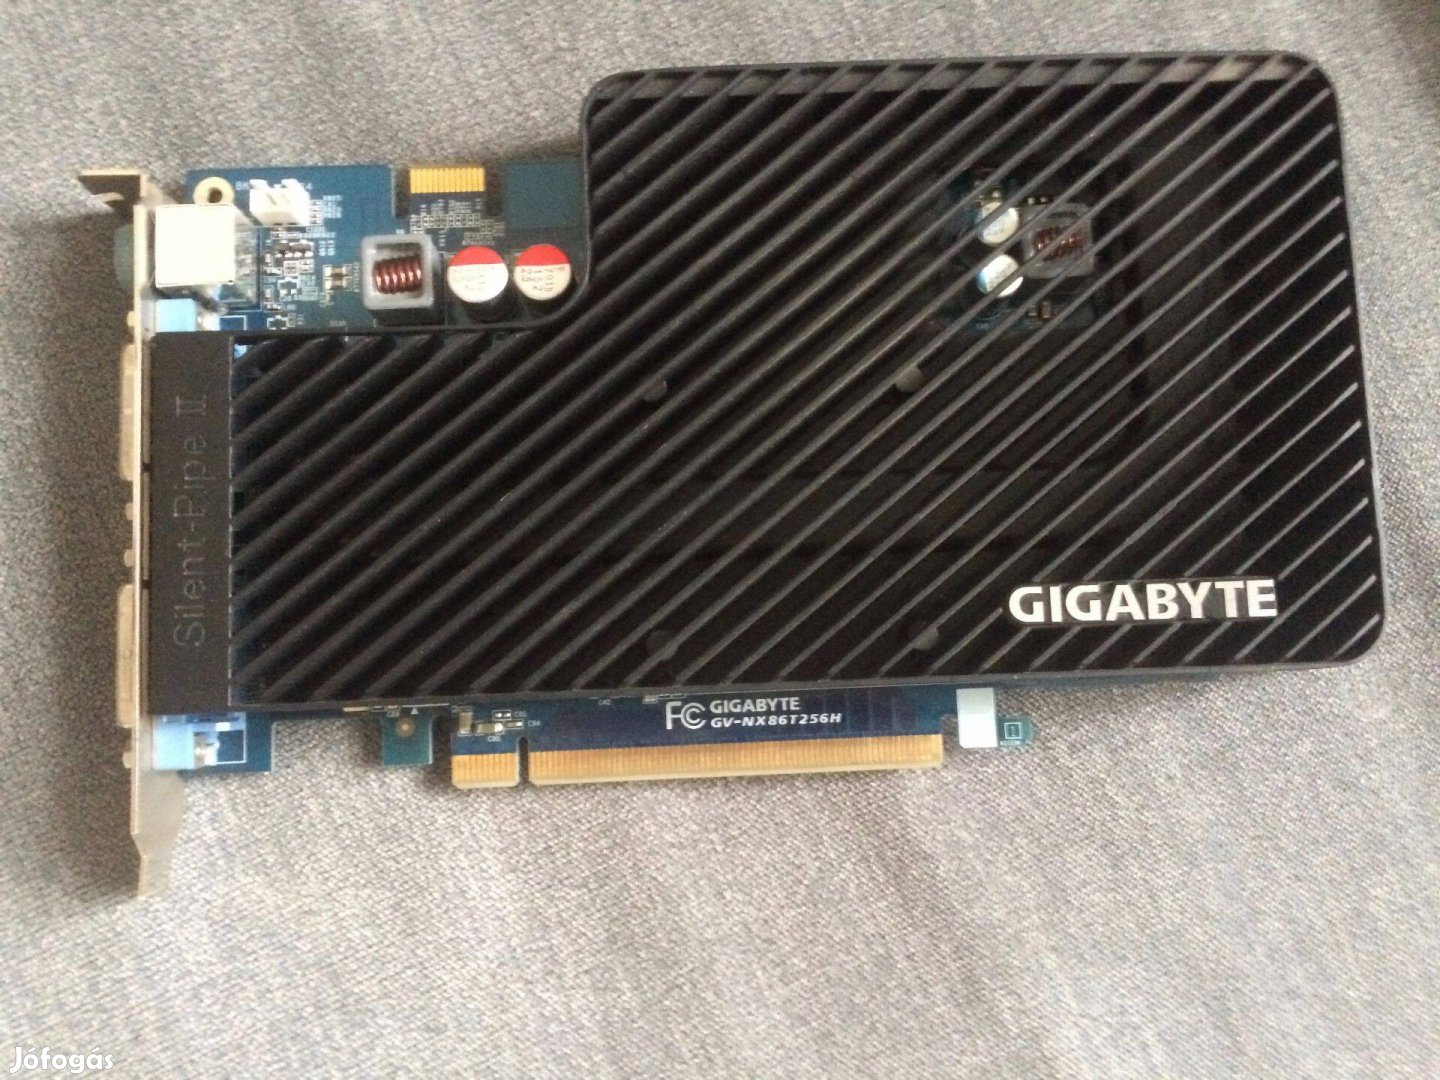 Gigabyte Nvidia Geforce 8600 Gt 256 MB Gddr3 passzív hűtéssel